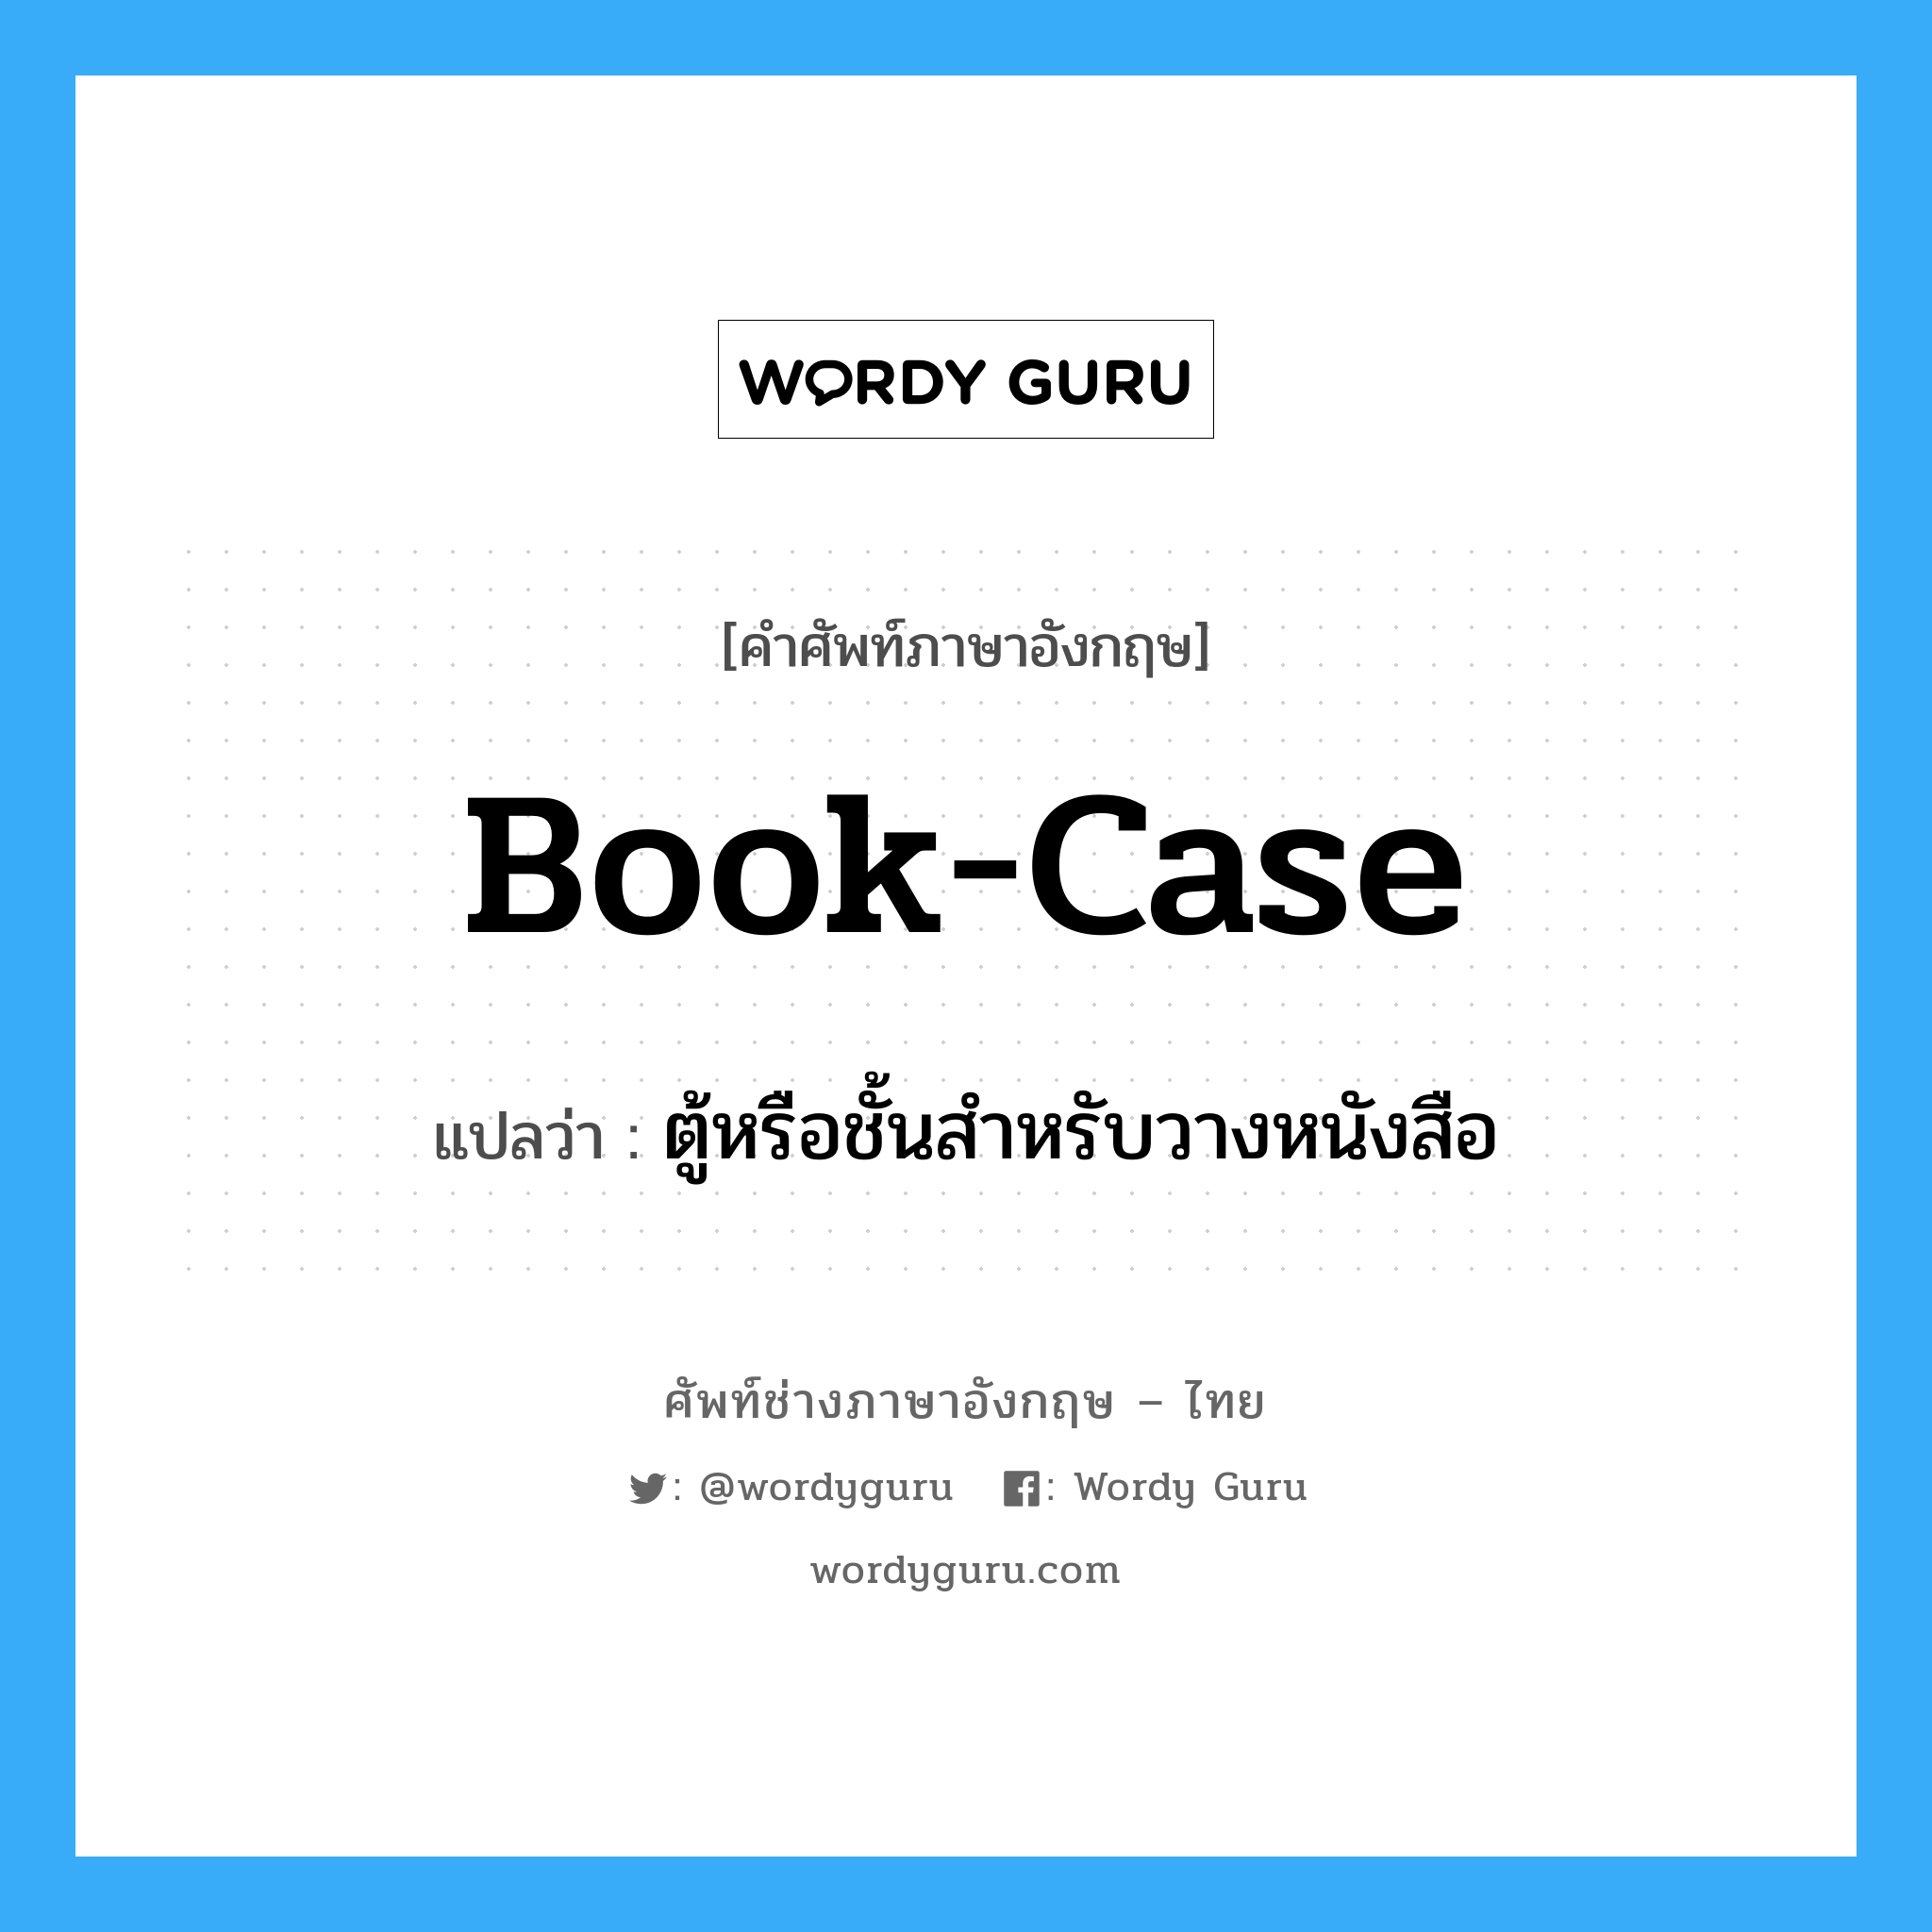 book-case แปลว่า?, คำศัพท์ช่างภาษาอังกฤษ - ไทย book-case คำศัพท์ภาษาอังกฤษ book-case แปลว่า ตู้หรือชั้นสำหรับวางหนังสือ